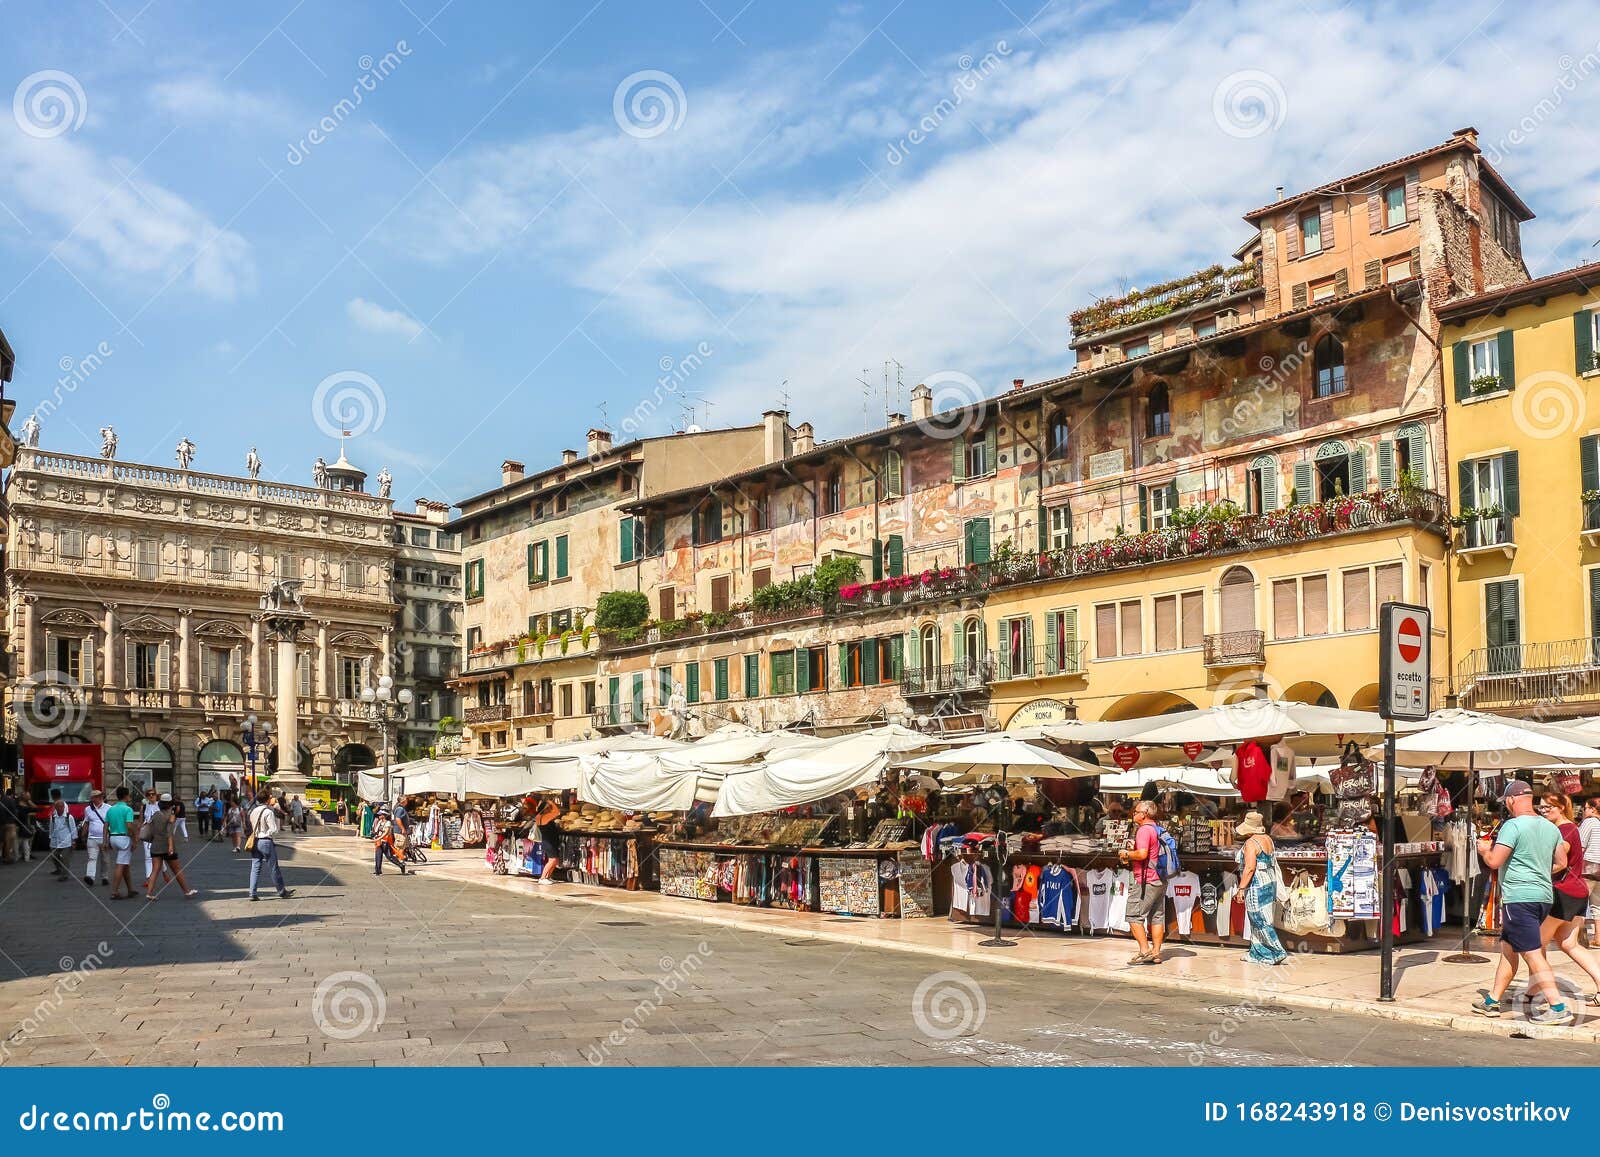 View of Street Market at the Erbe Square Piazza Delle Erbe in Verona ...